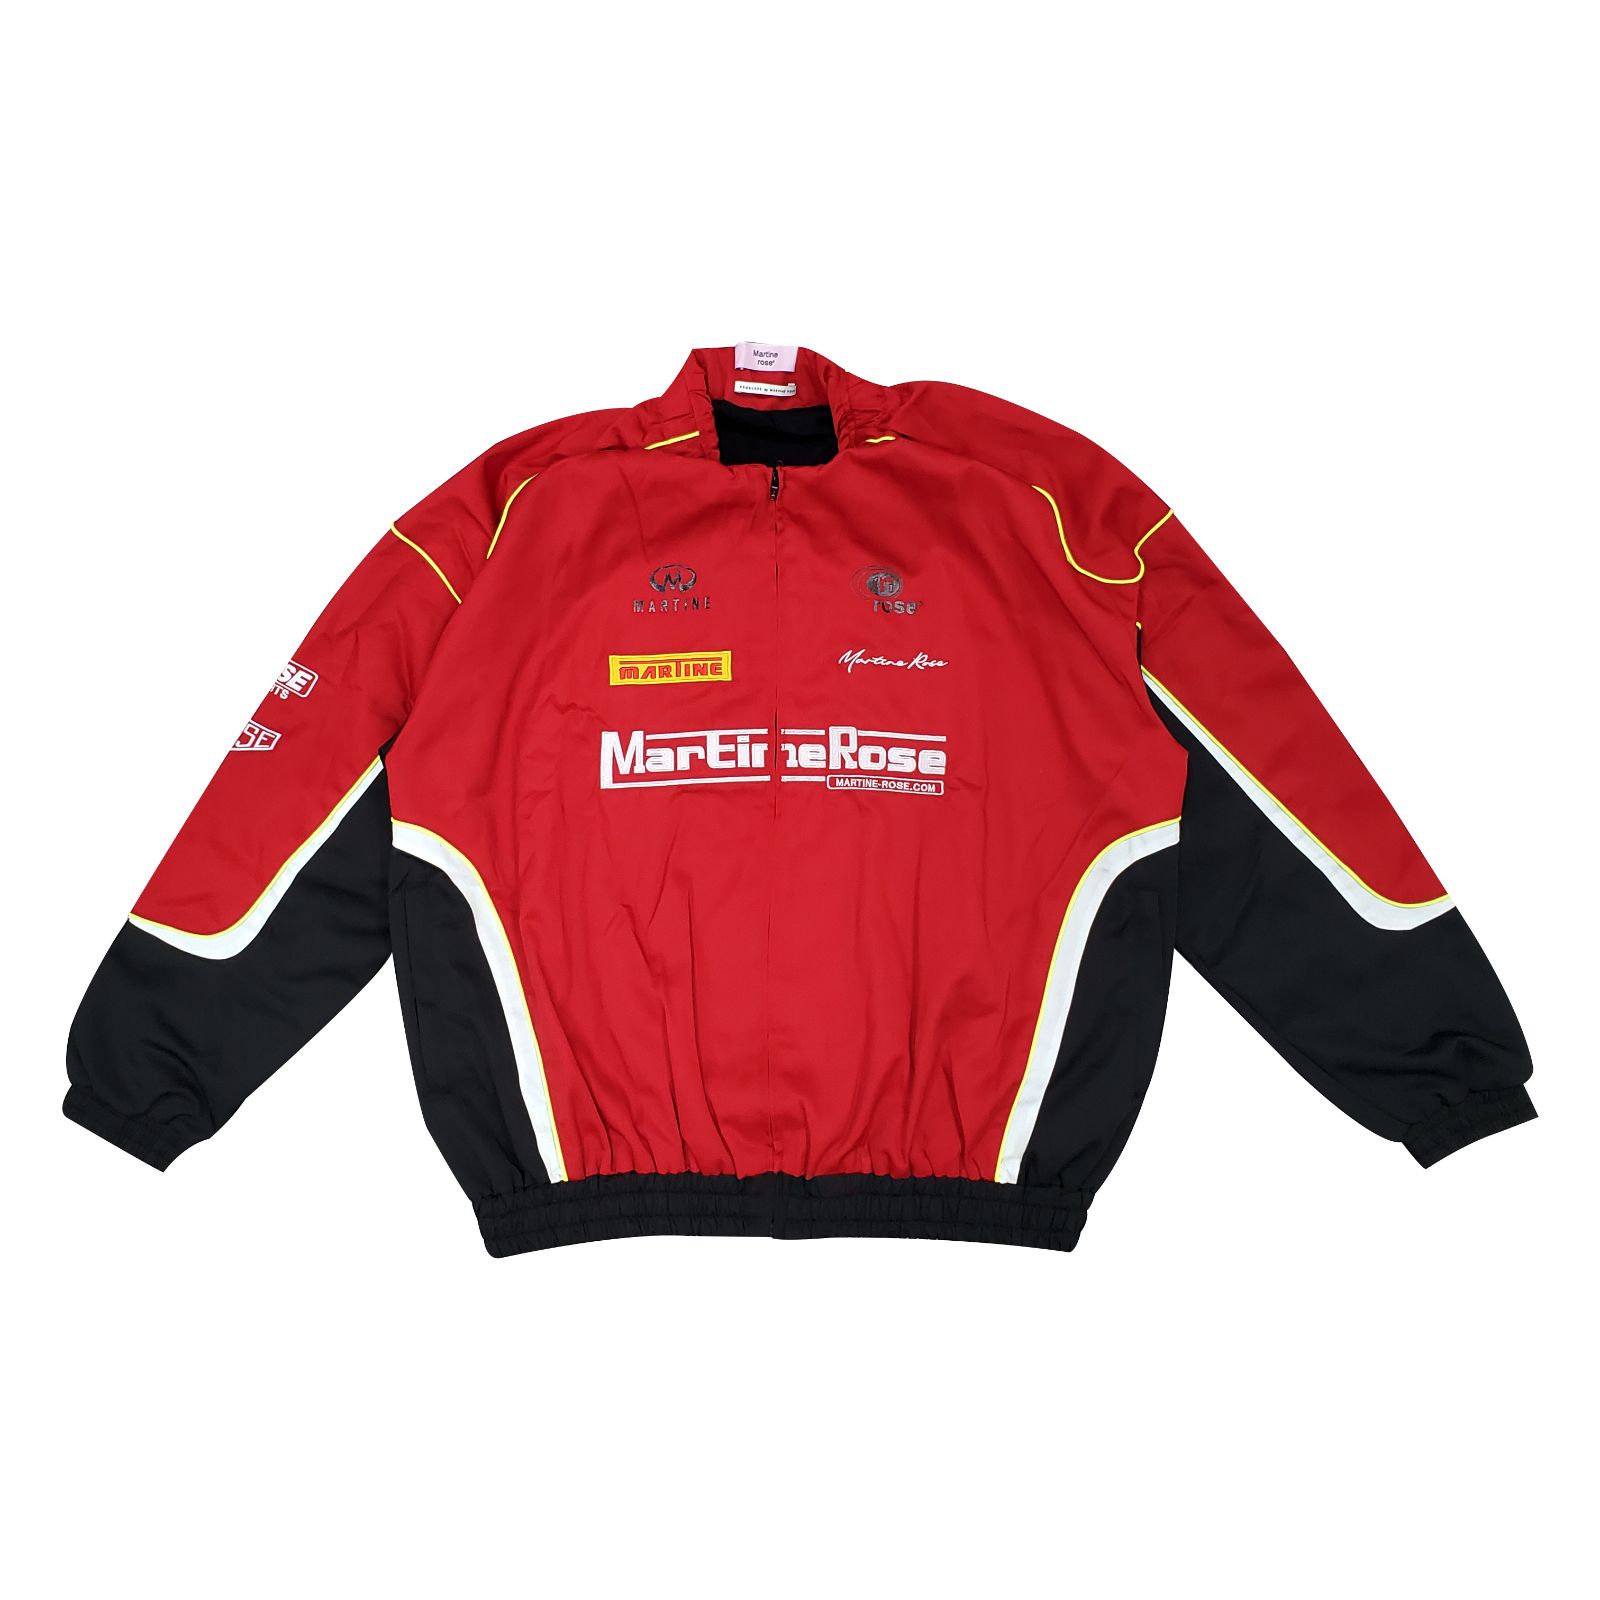 Martine Rose Tuck Neck Sponsor Jacket in Red